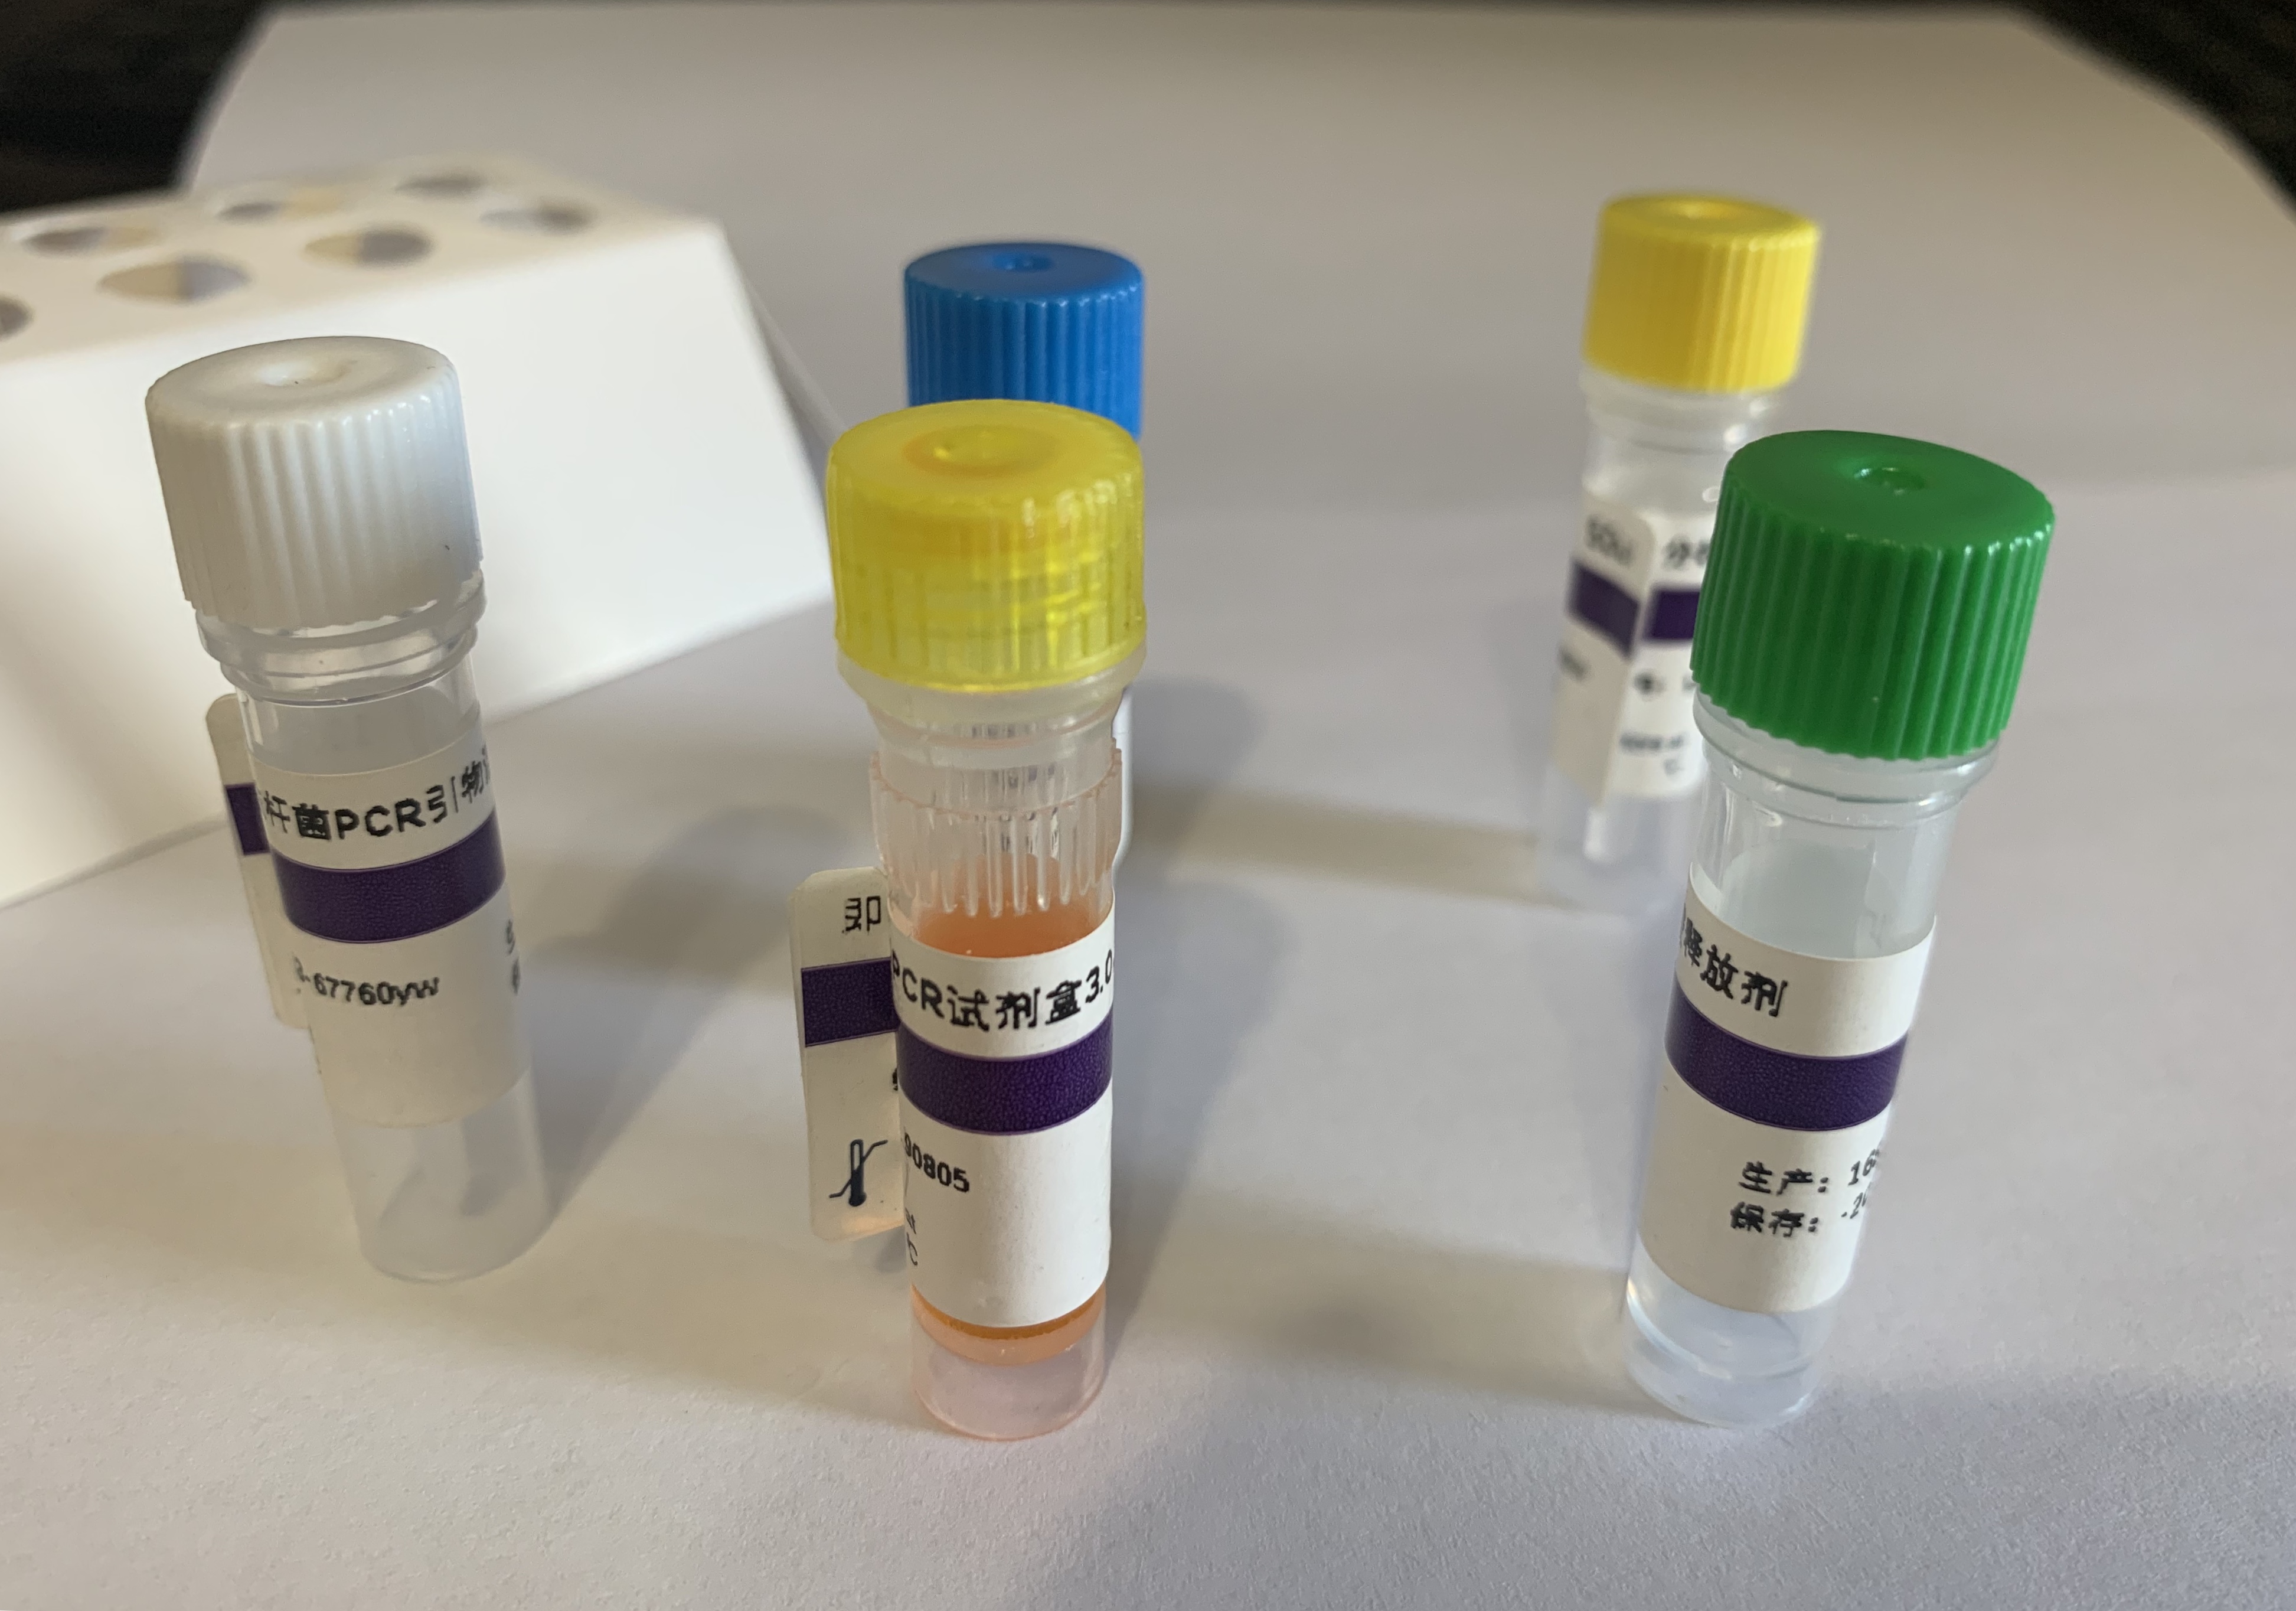 桃拉综合症病毒RT-PCR试剂盒